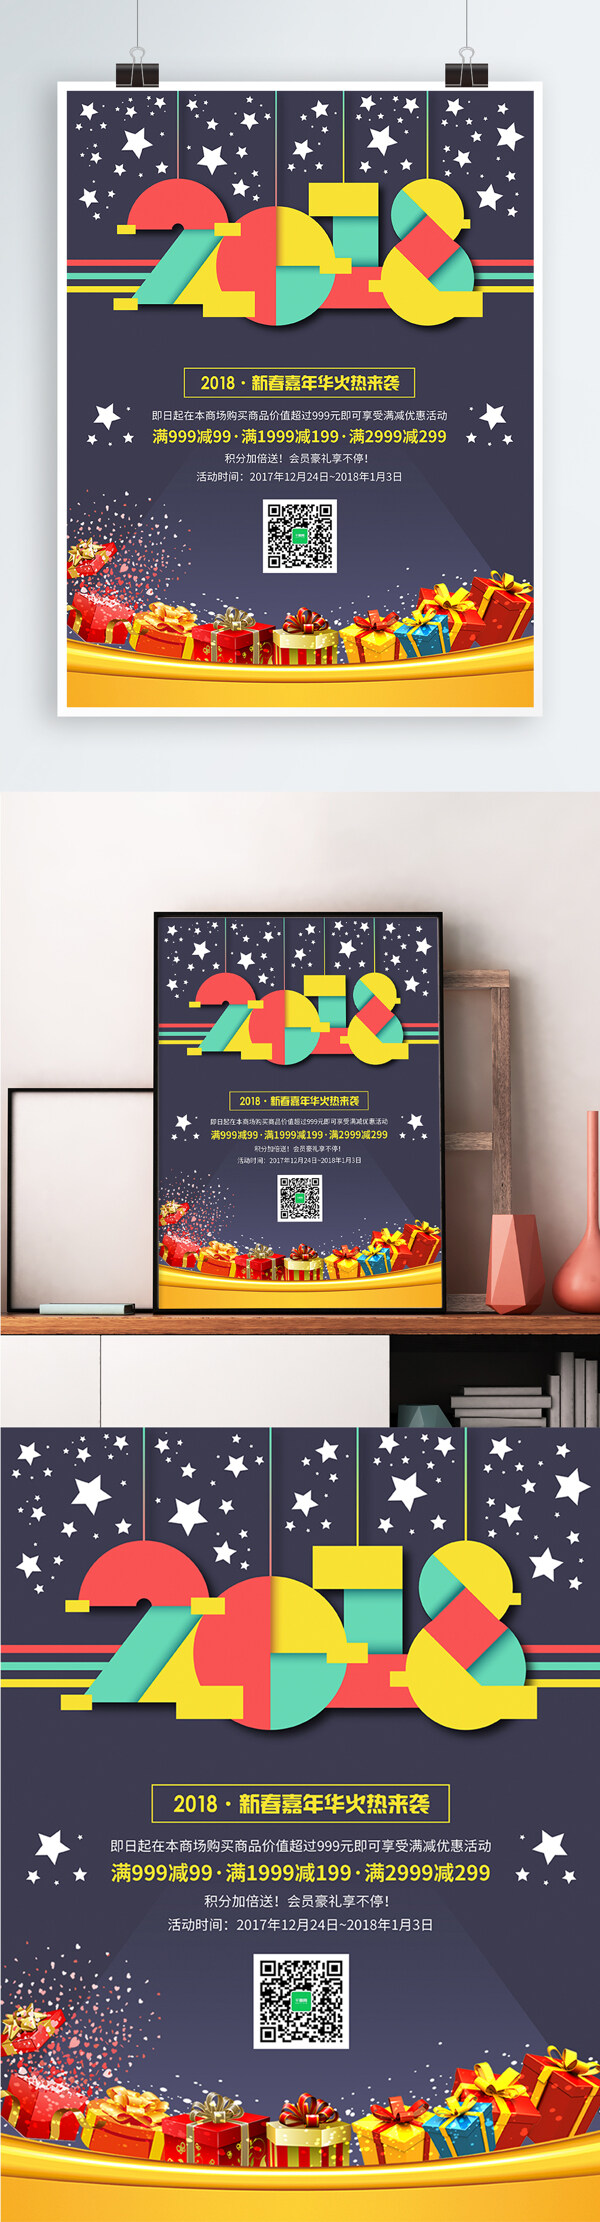 简约彩色2018商场促销海报PSD模板